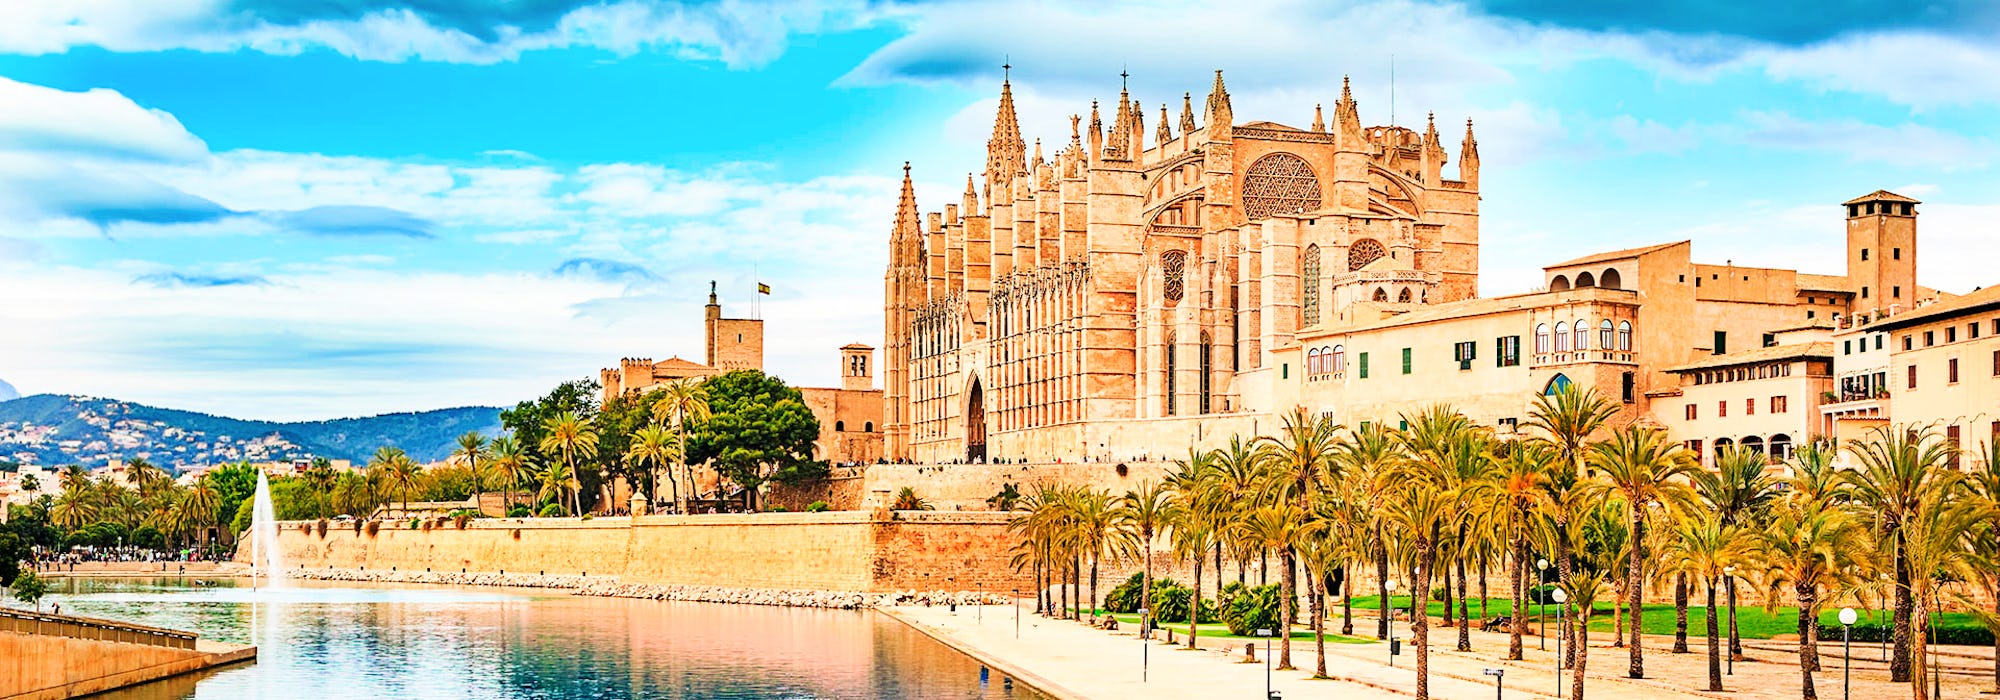 Krydstogt i Middelhavet - Palma de Mallorca - Cathedral of Palma de Mallorca